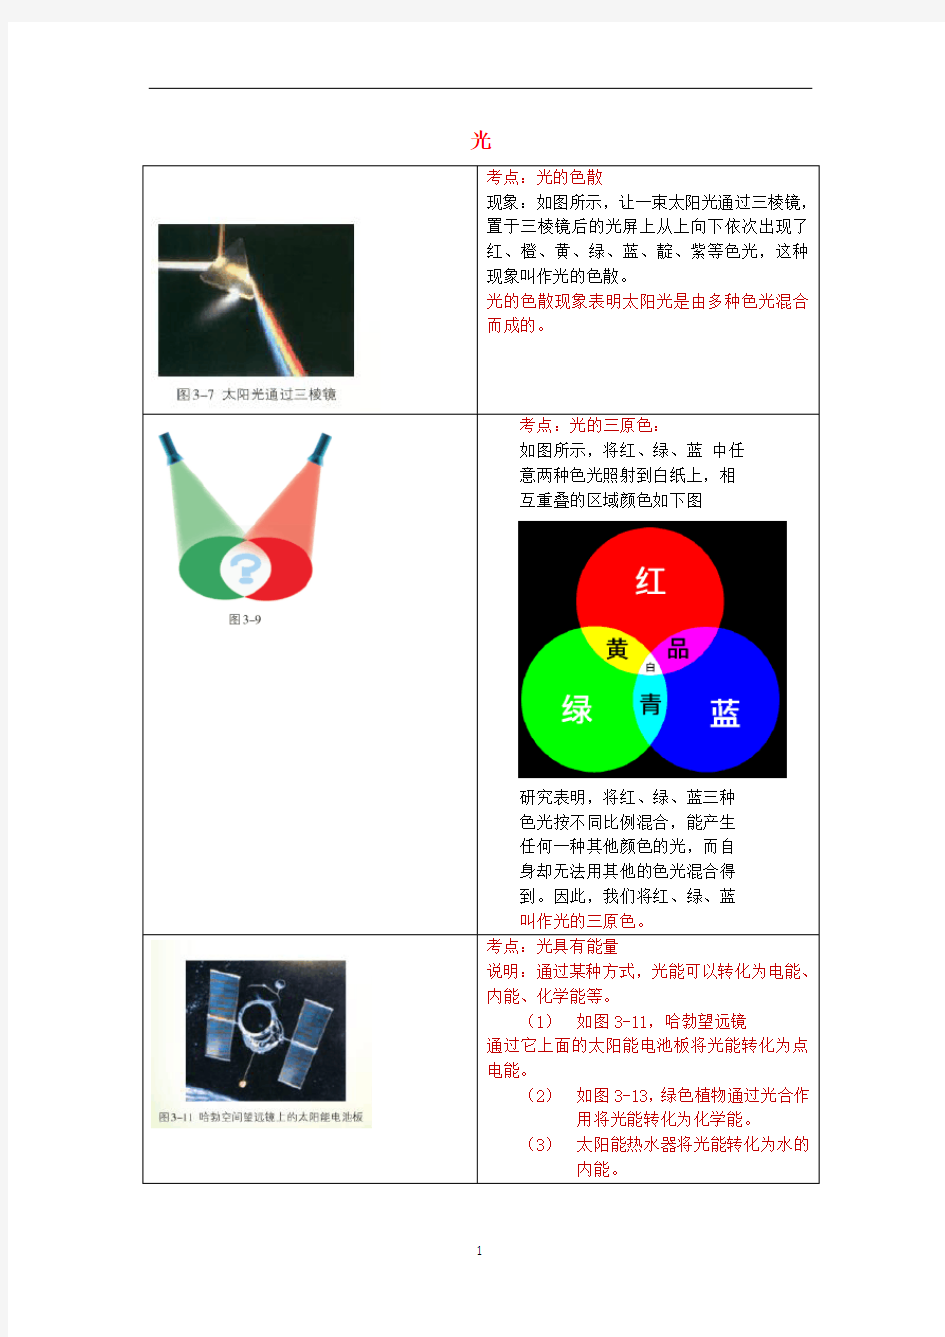 初中物理 教材图片素材(光)(新版)苏科版